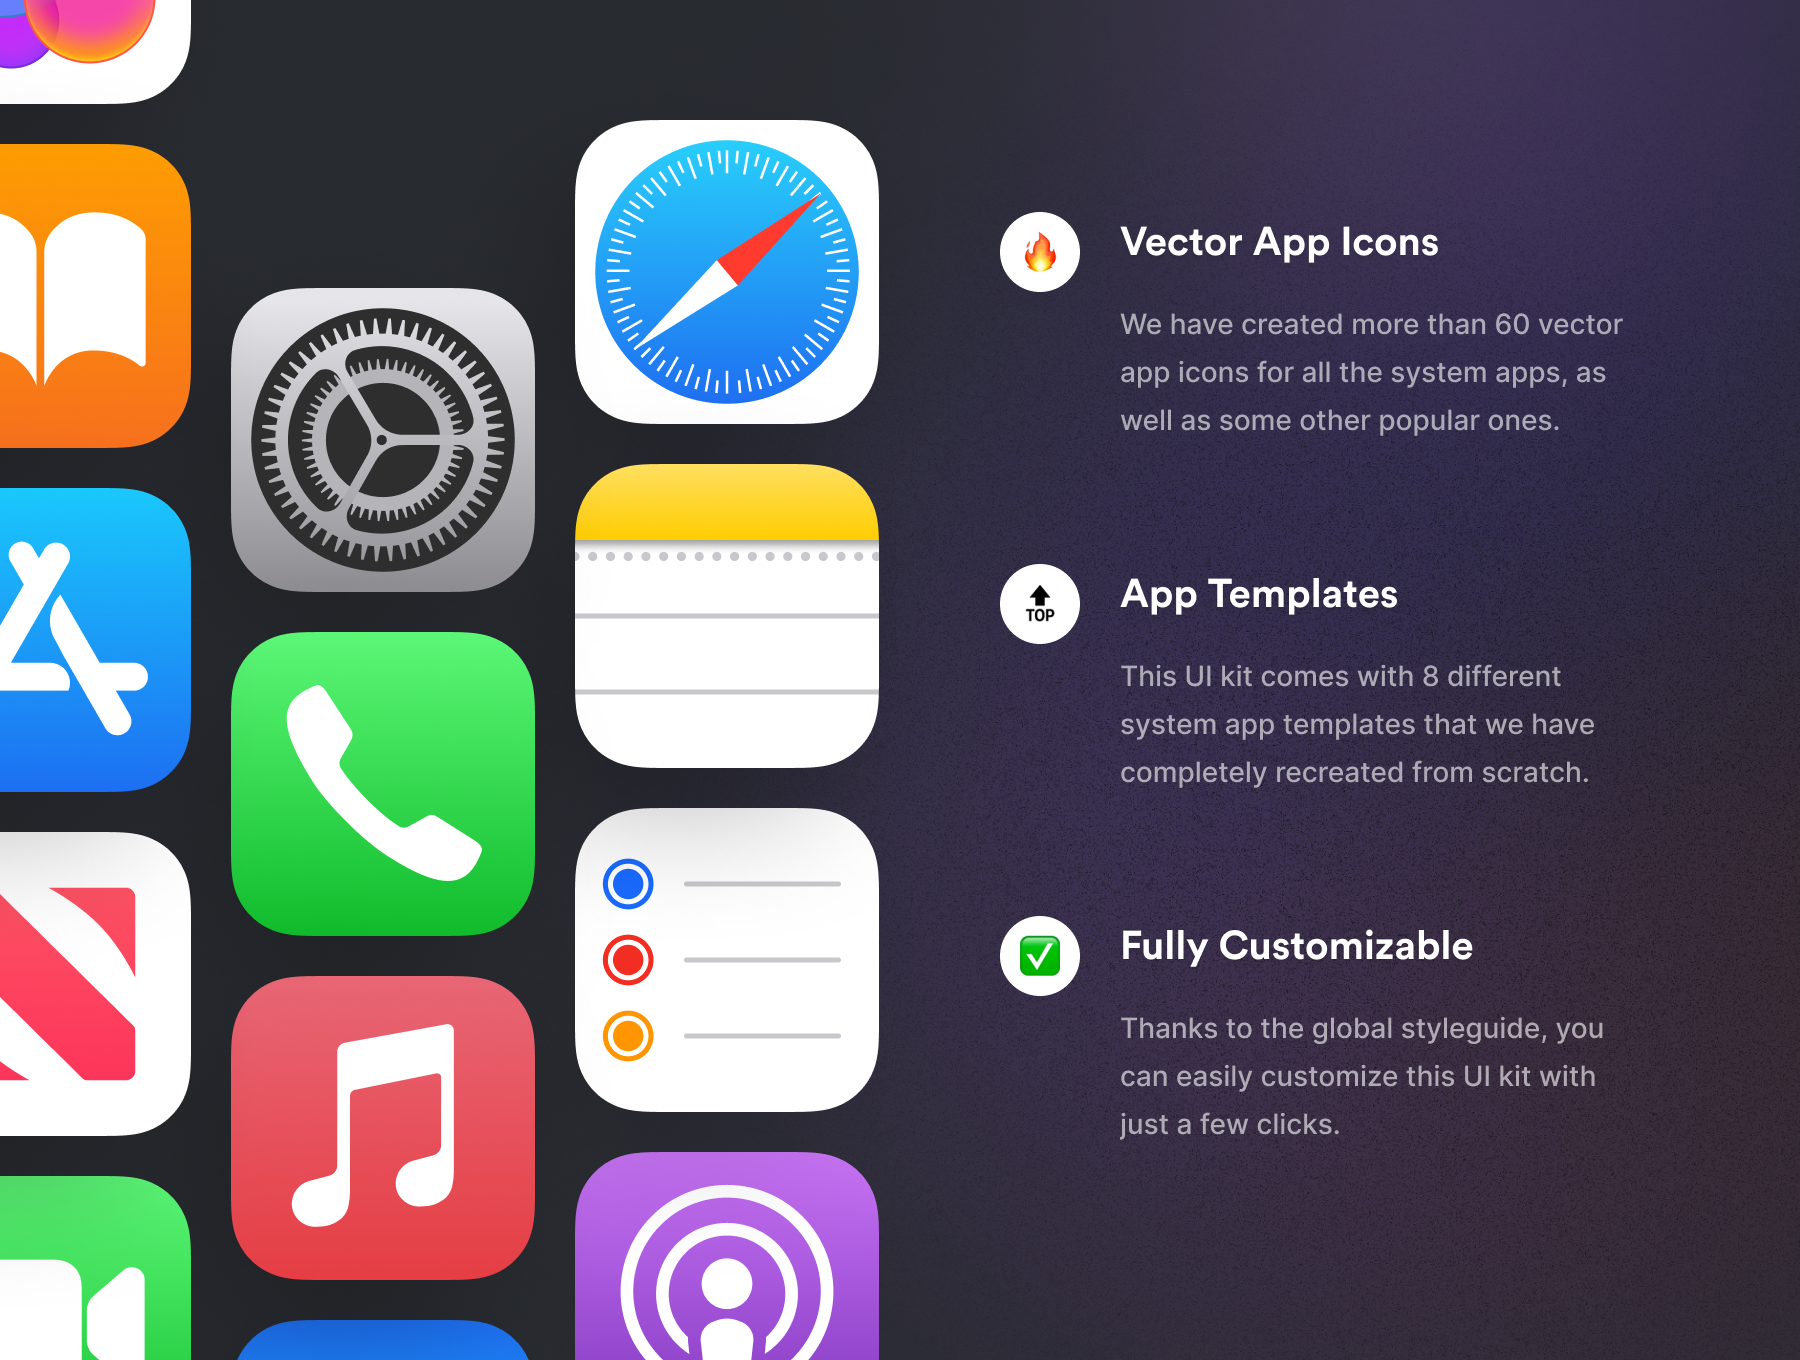 iOS 14 UI Kit